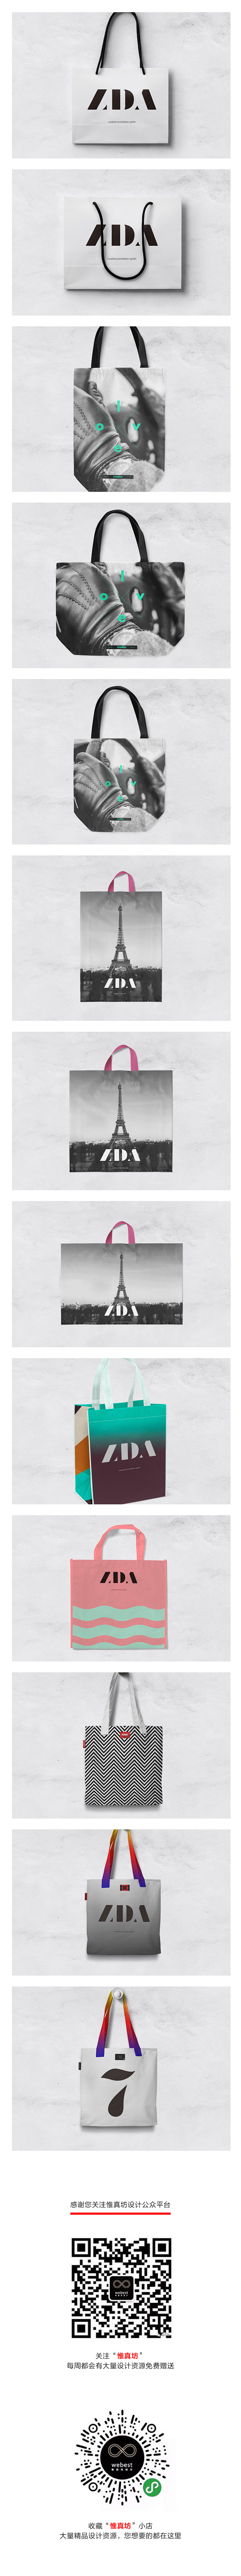 时尚塑料袋手提袋帆布袋购物袋挎包VI设计...